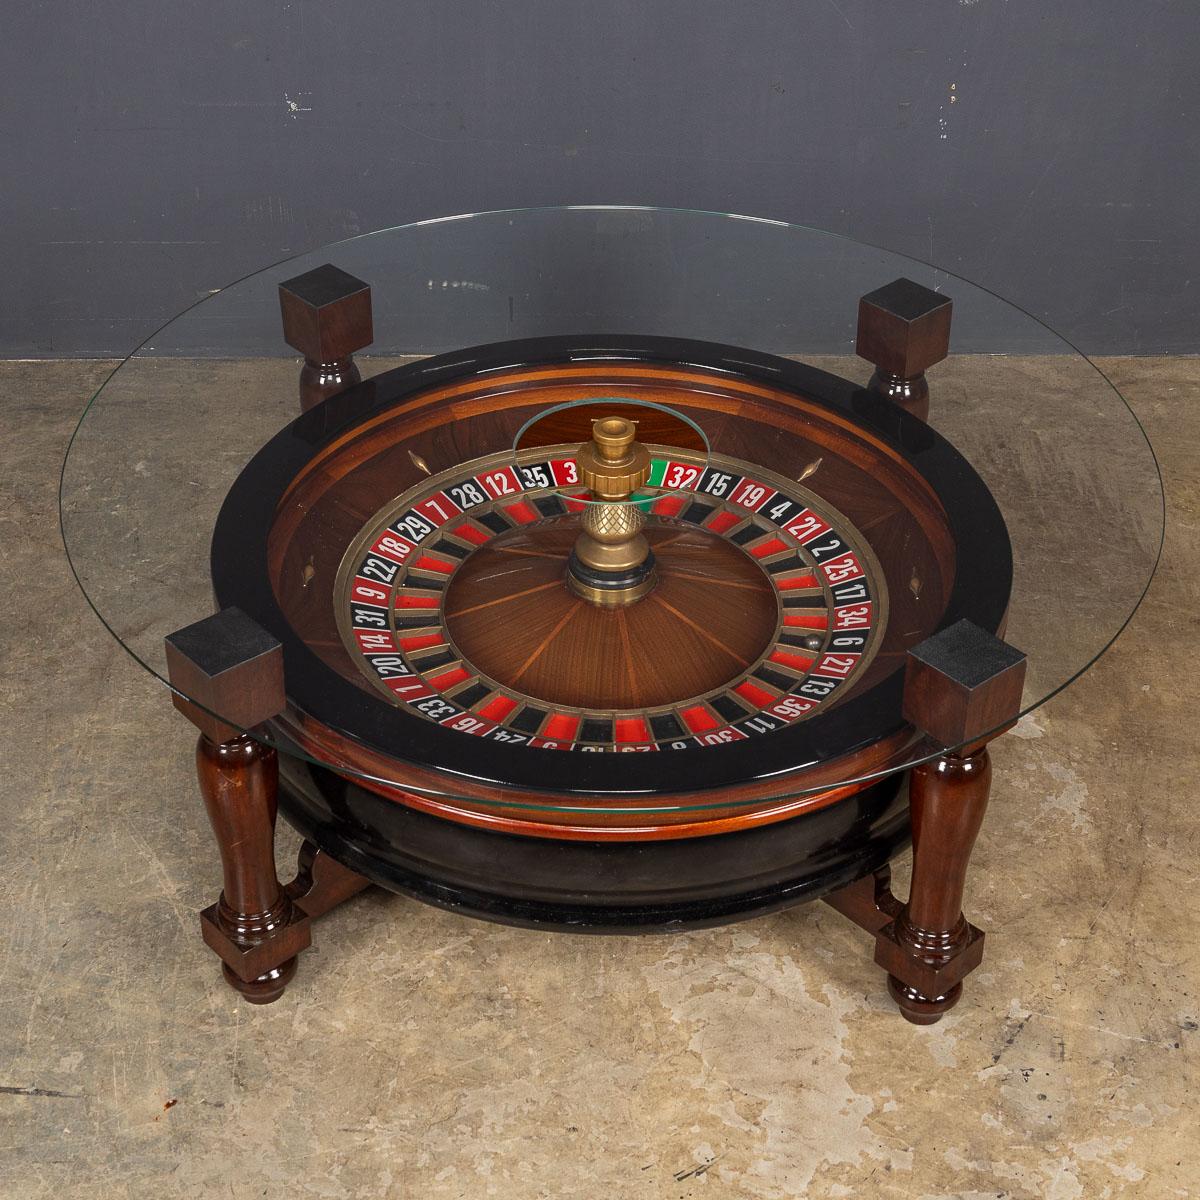 Voici une roulette de casino exquise, un chef-d'œuvre d'artisanat, resplendissant en bois d'acajou orné de détails en laiton. Cette création opulente repose sur un socle en acajou finement tourné, ce qui en fait une véritable œuvre d'art. Cette